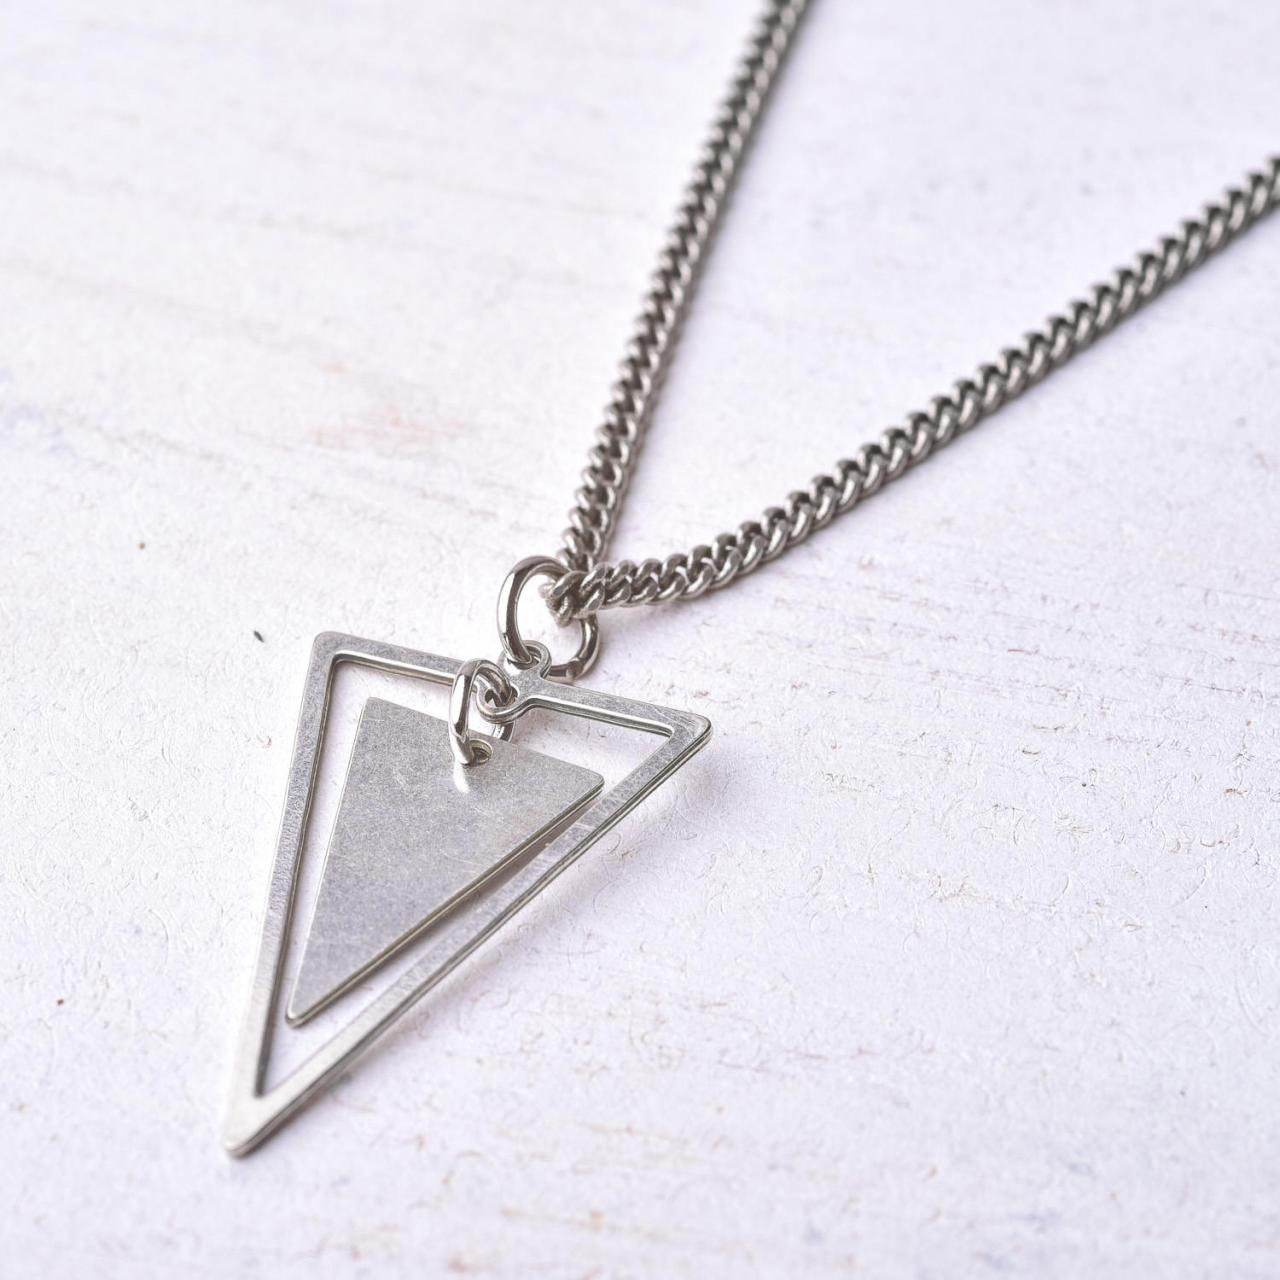 Men's Necklace - Men's Silver Necklace - Men's Triangle Necklace - Men's Geometric Necklace - Men's